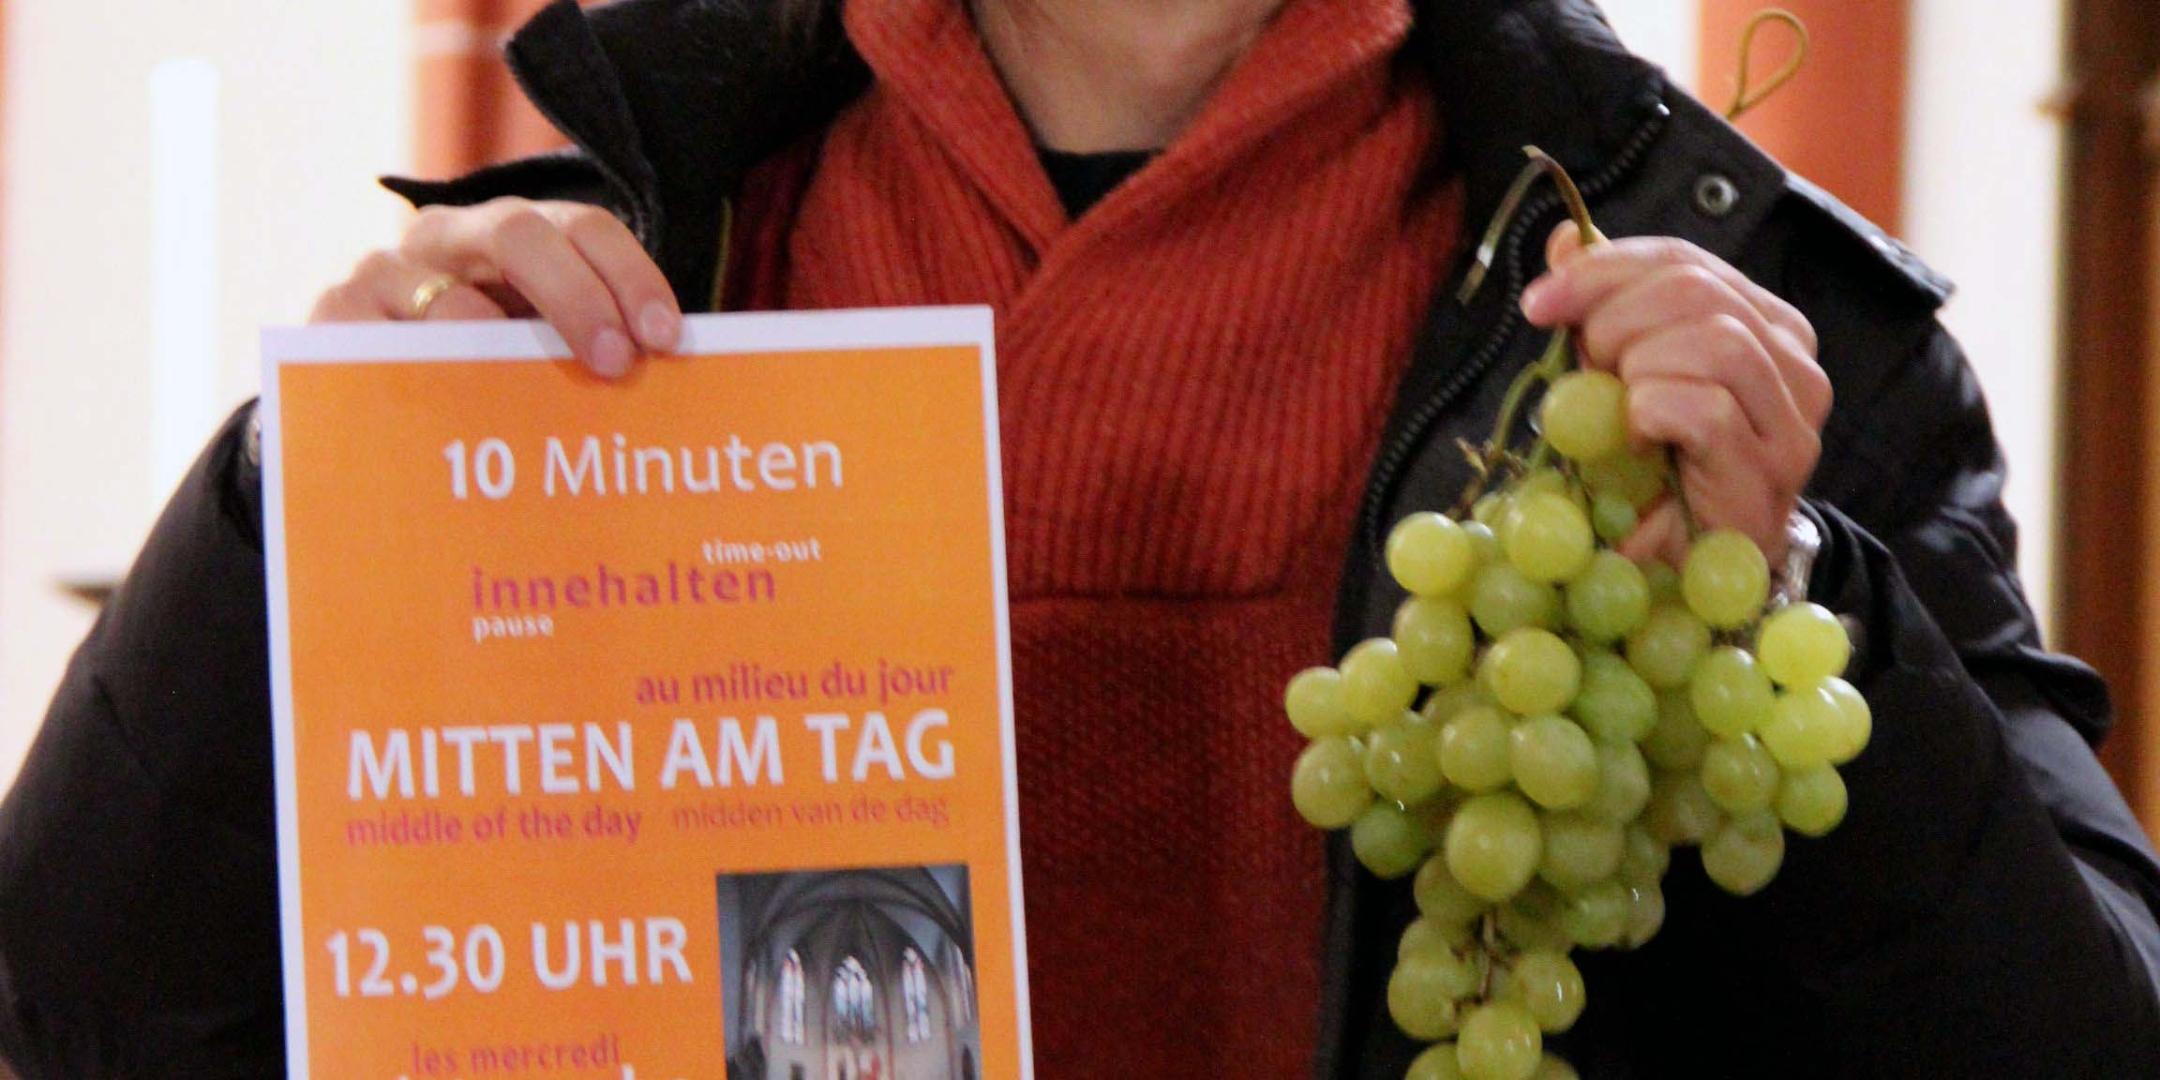 Pastoralreferent Tomek Welke zeigt das Plakat 'Mitten am Tag' und die für die Region typischen Weintrauben